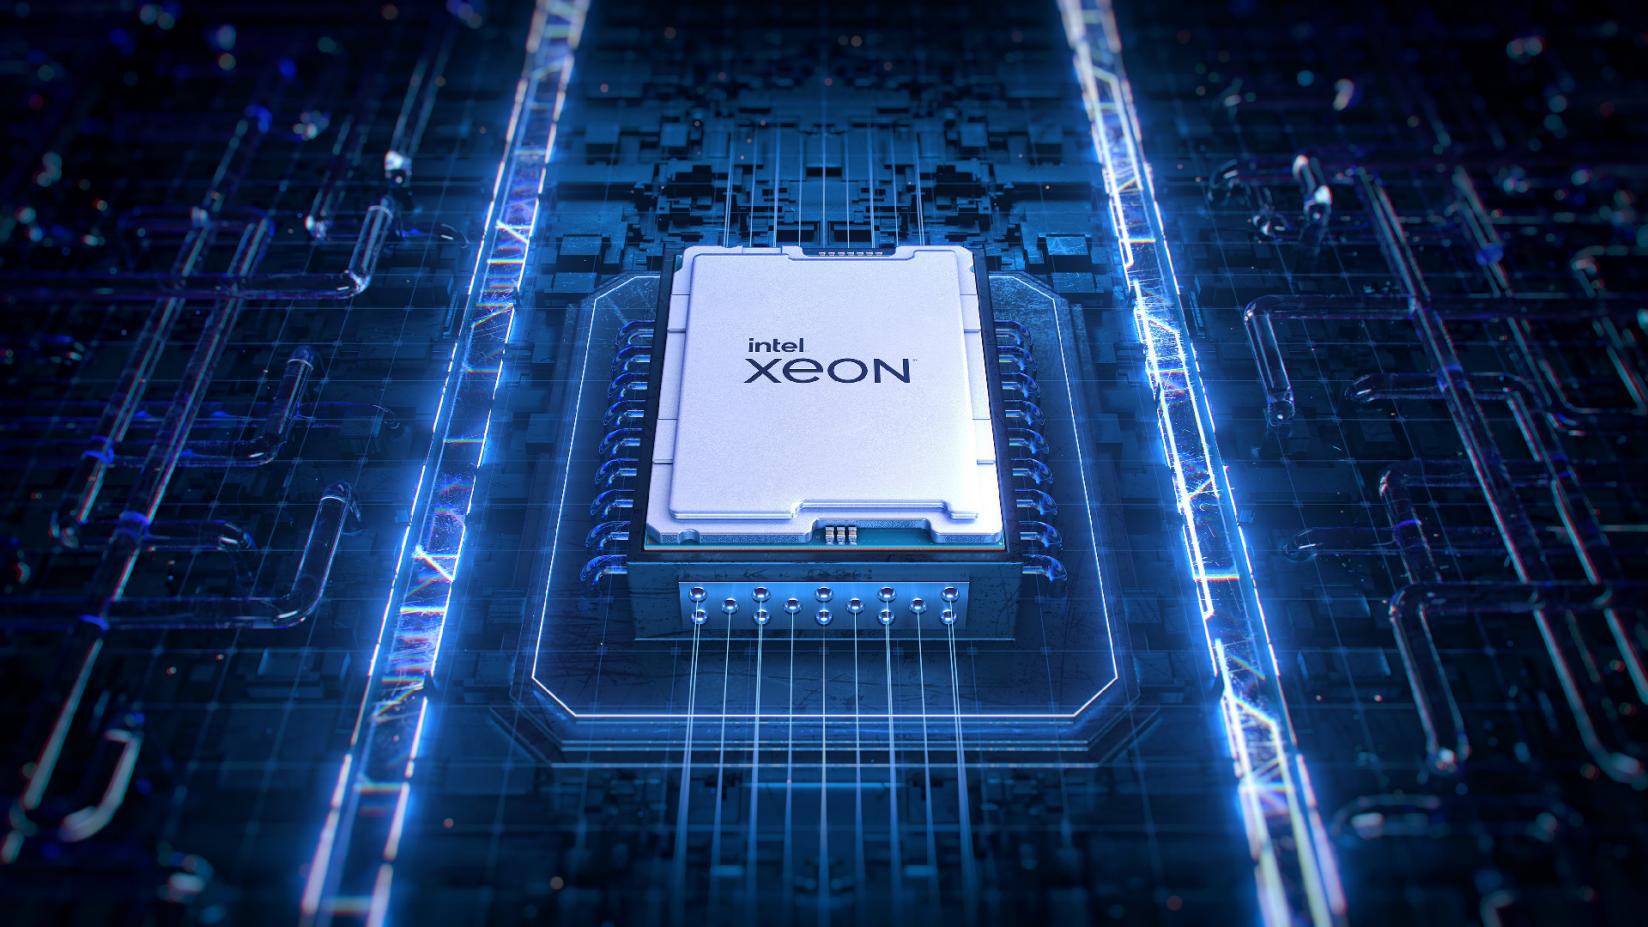 56-ядерный монстр Intel только что разгромил лучший процессор AMD и установил мировой рекорд